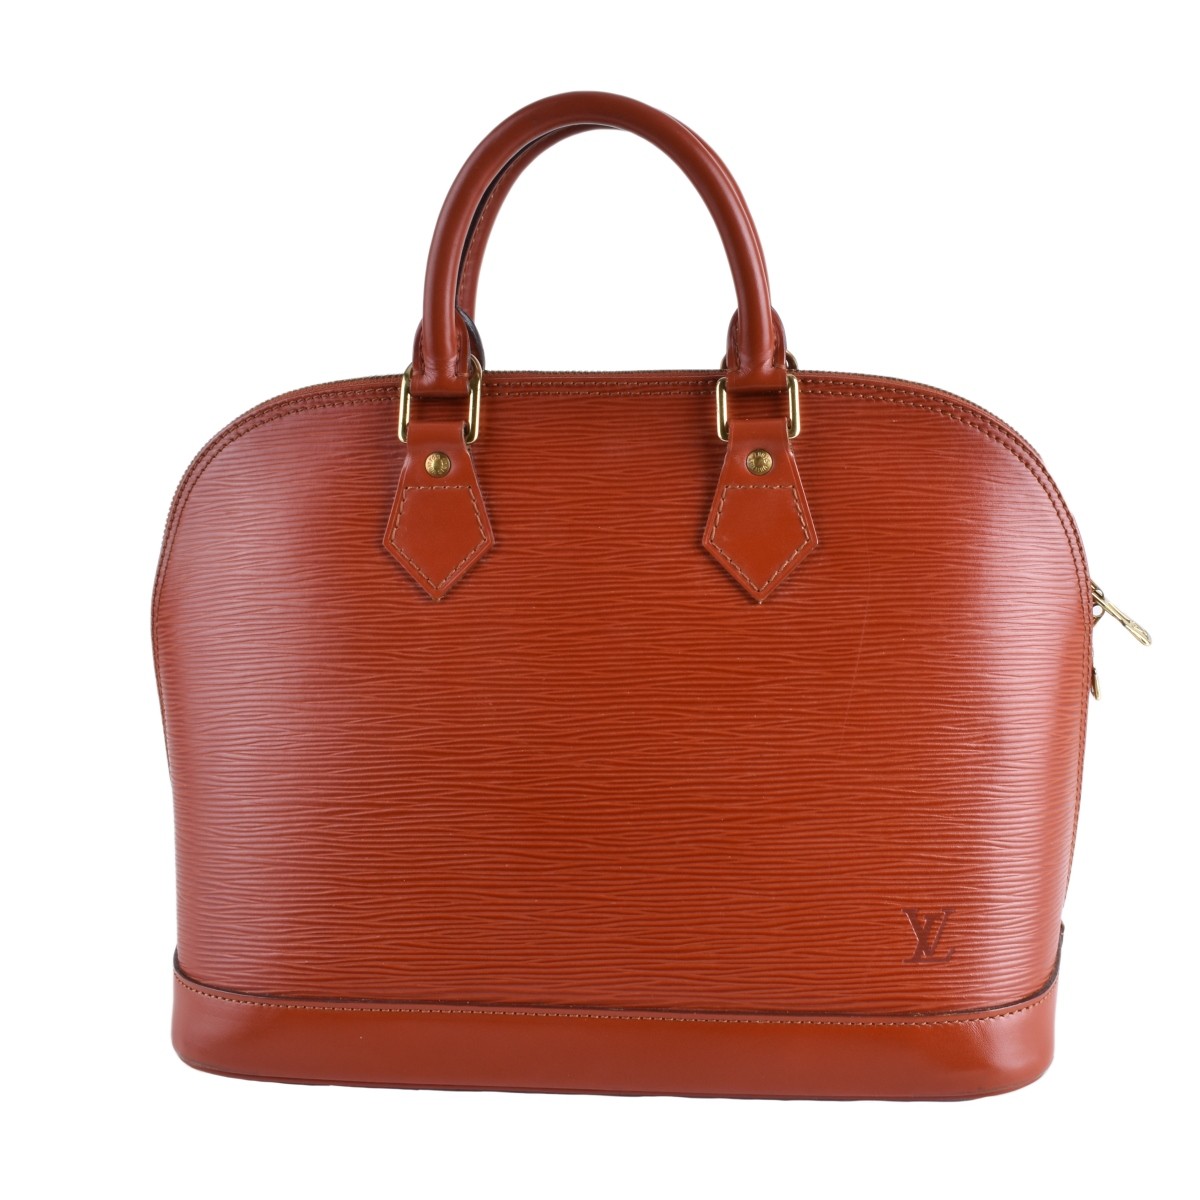 Sold at Auction: Louis Vuitton, Louis Vuitton Style Epi Leather